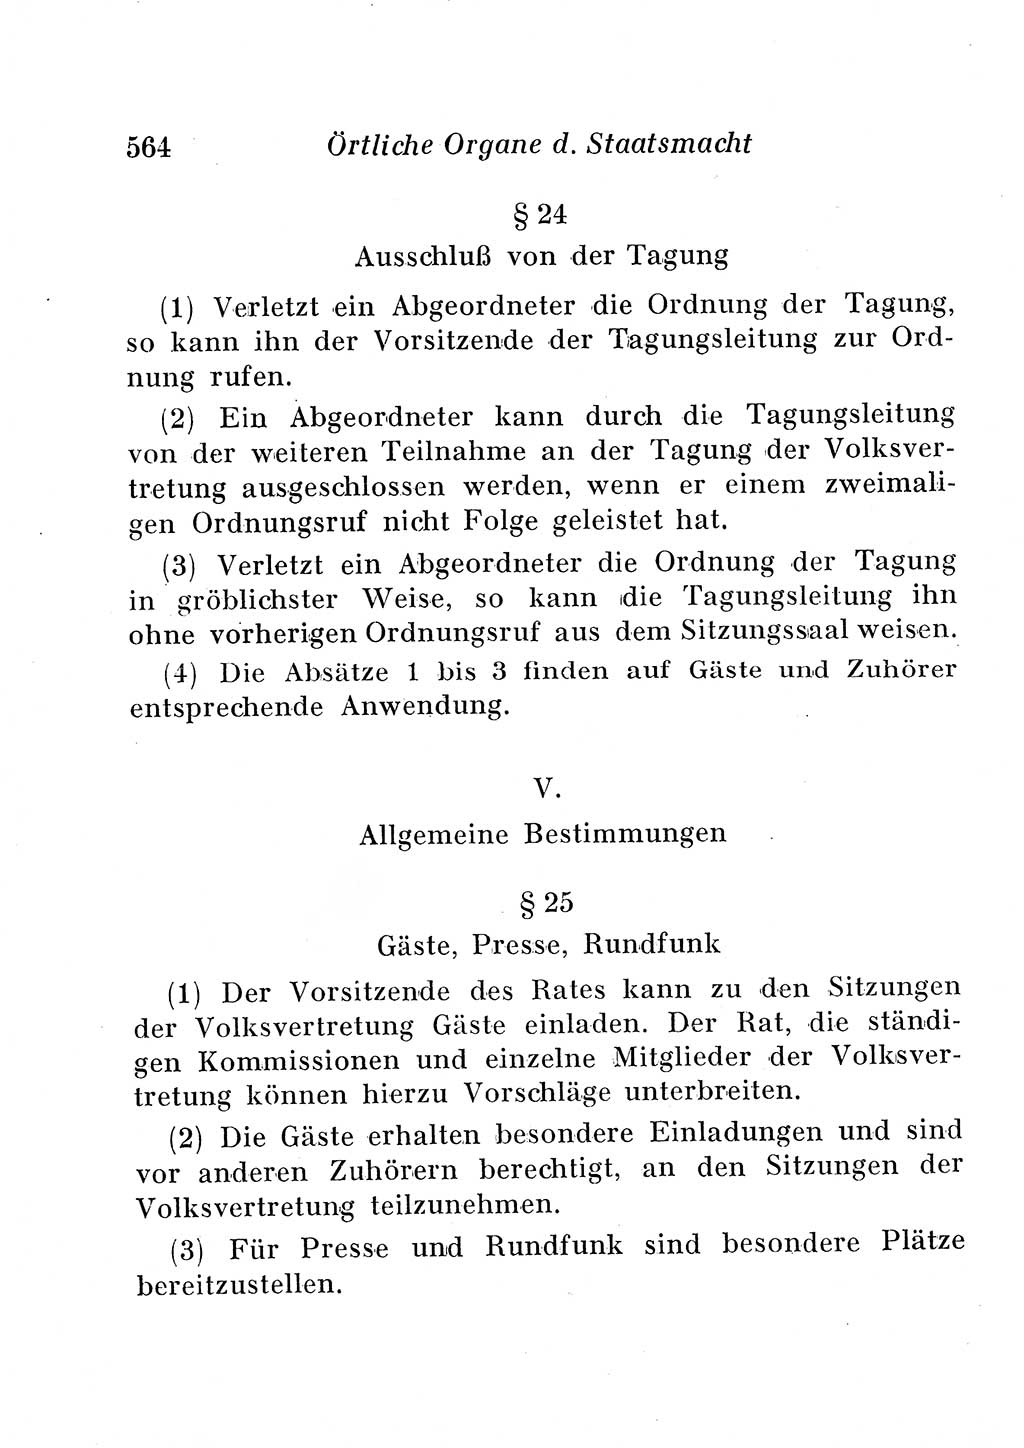 Staats- und verwaltungsrechtliche Gesetze der Deutschen Demokratischen Republik (DDR) 1958, Seite 564 (StVerwR Ges. DDR 1958, S. 564)